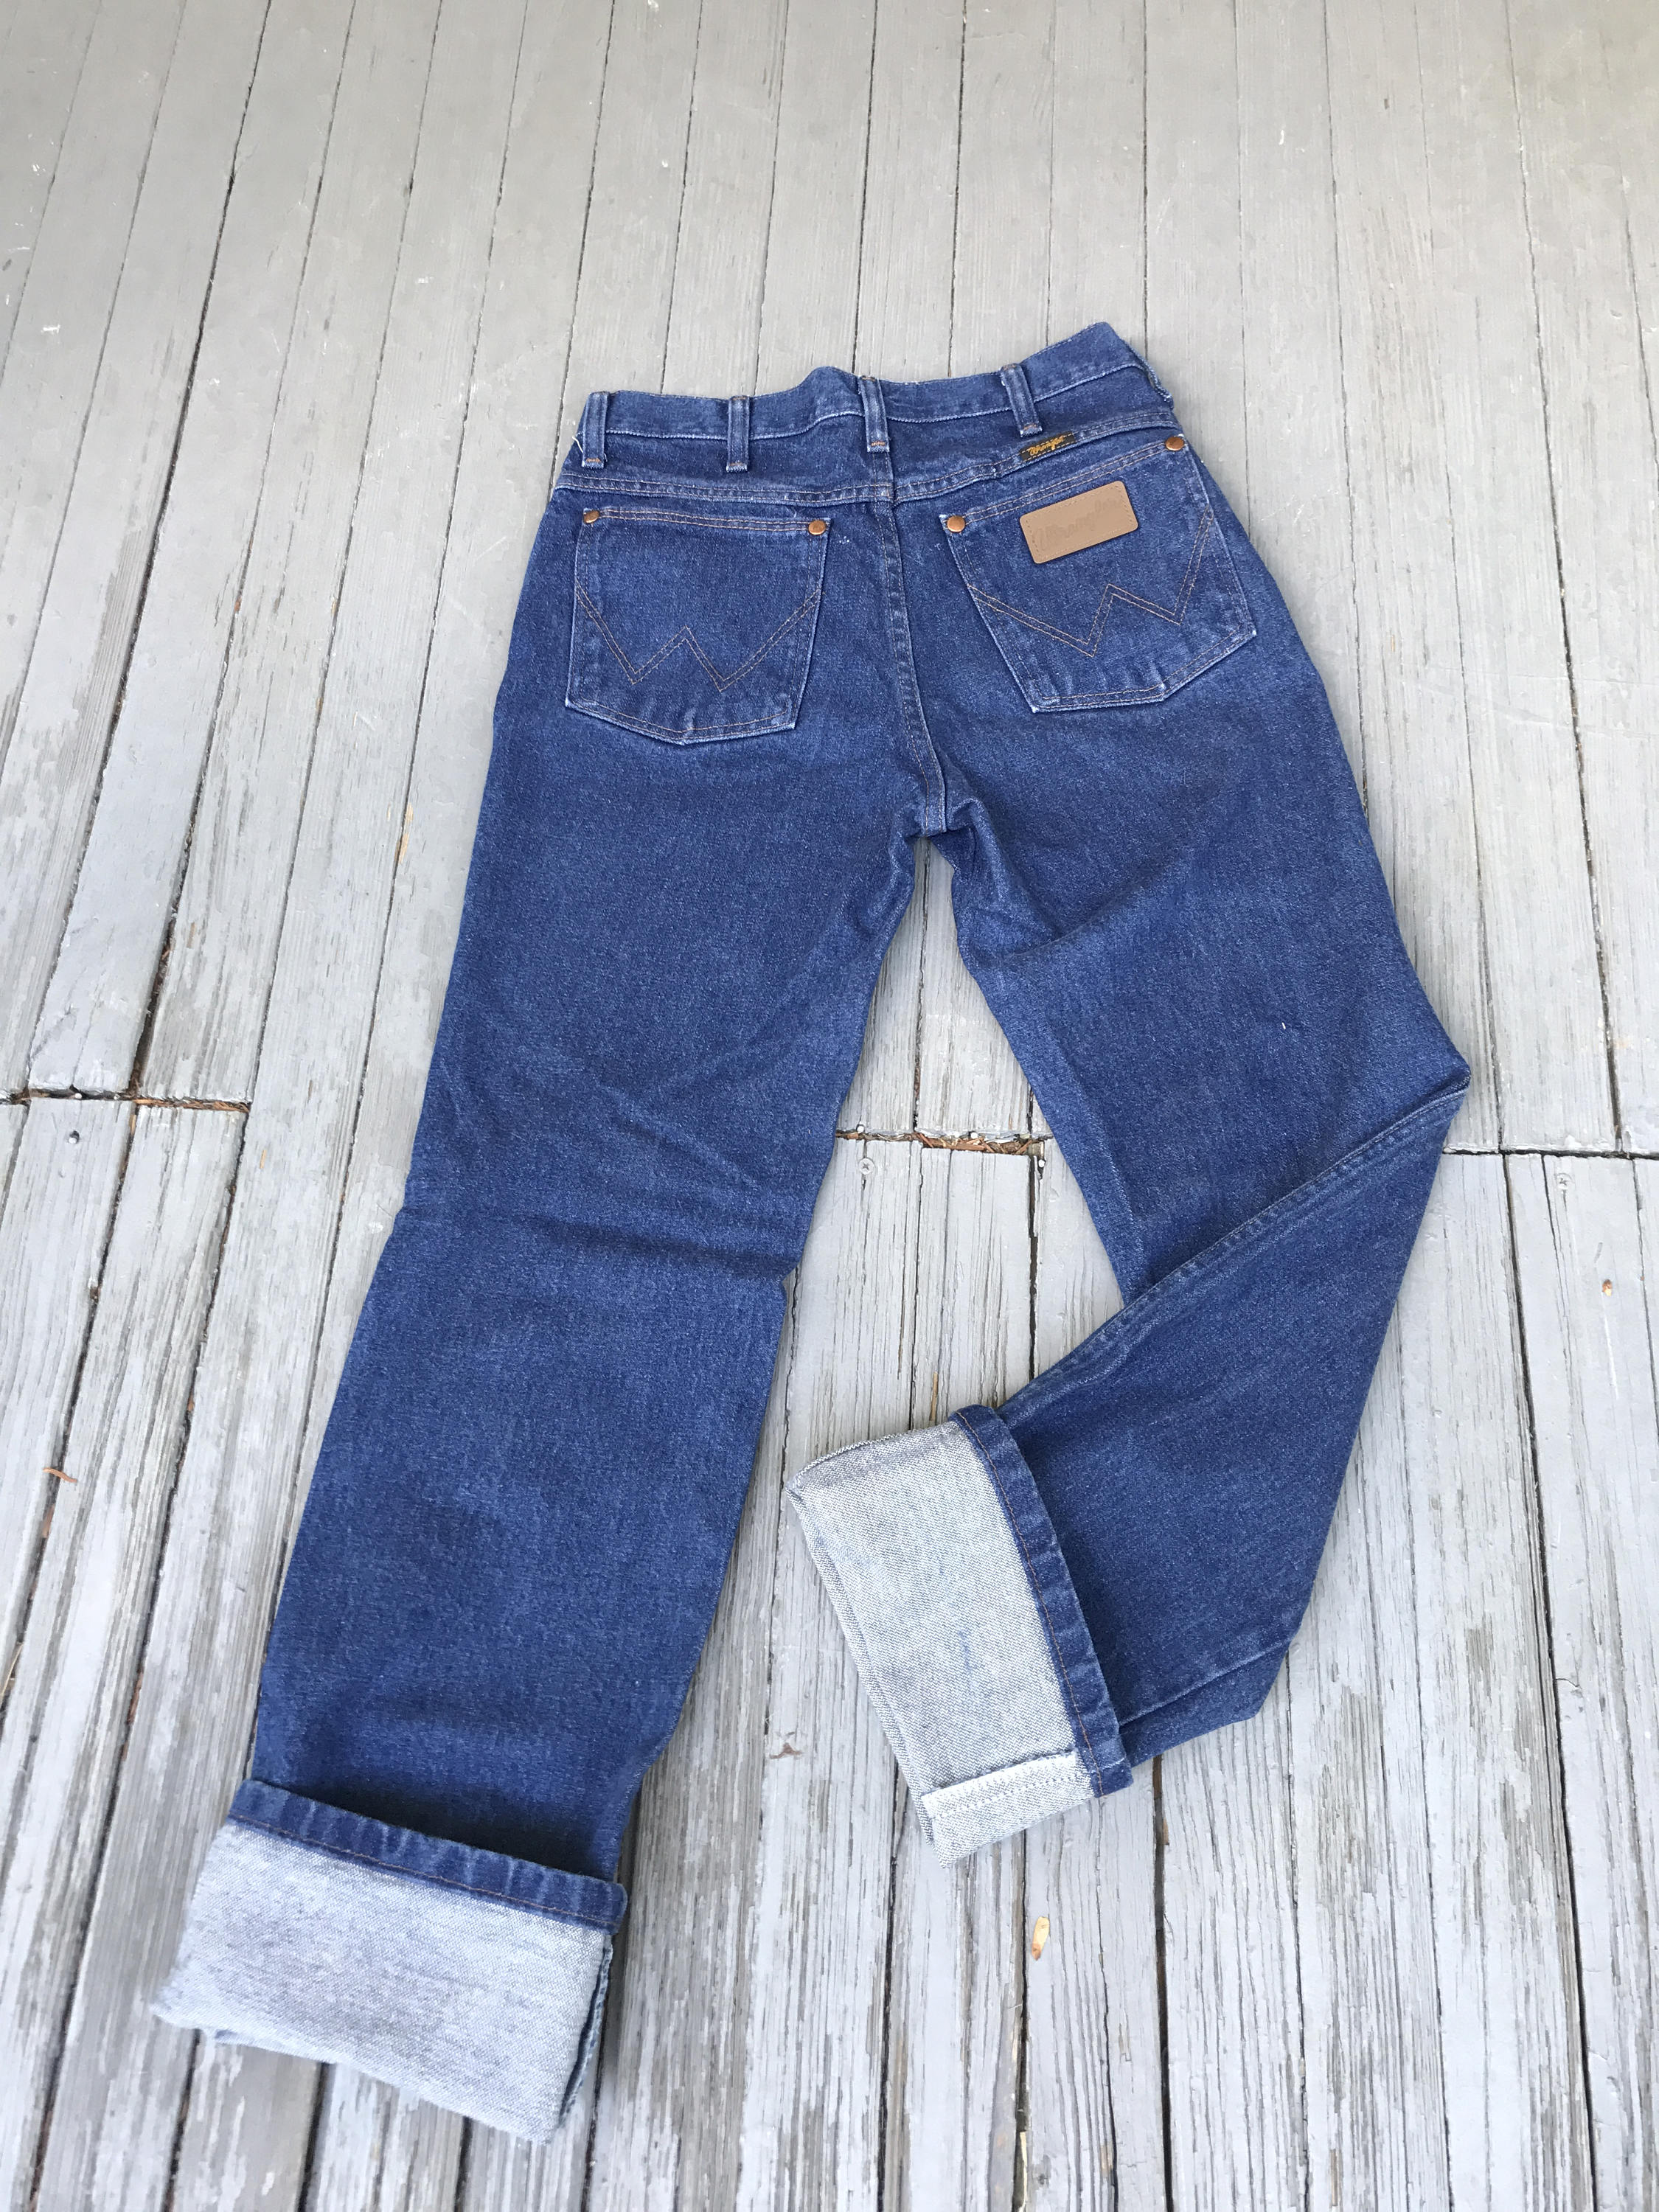 Vintage 70s Wrangler 70s Wrangler jeans High Waisted Jeans